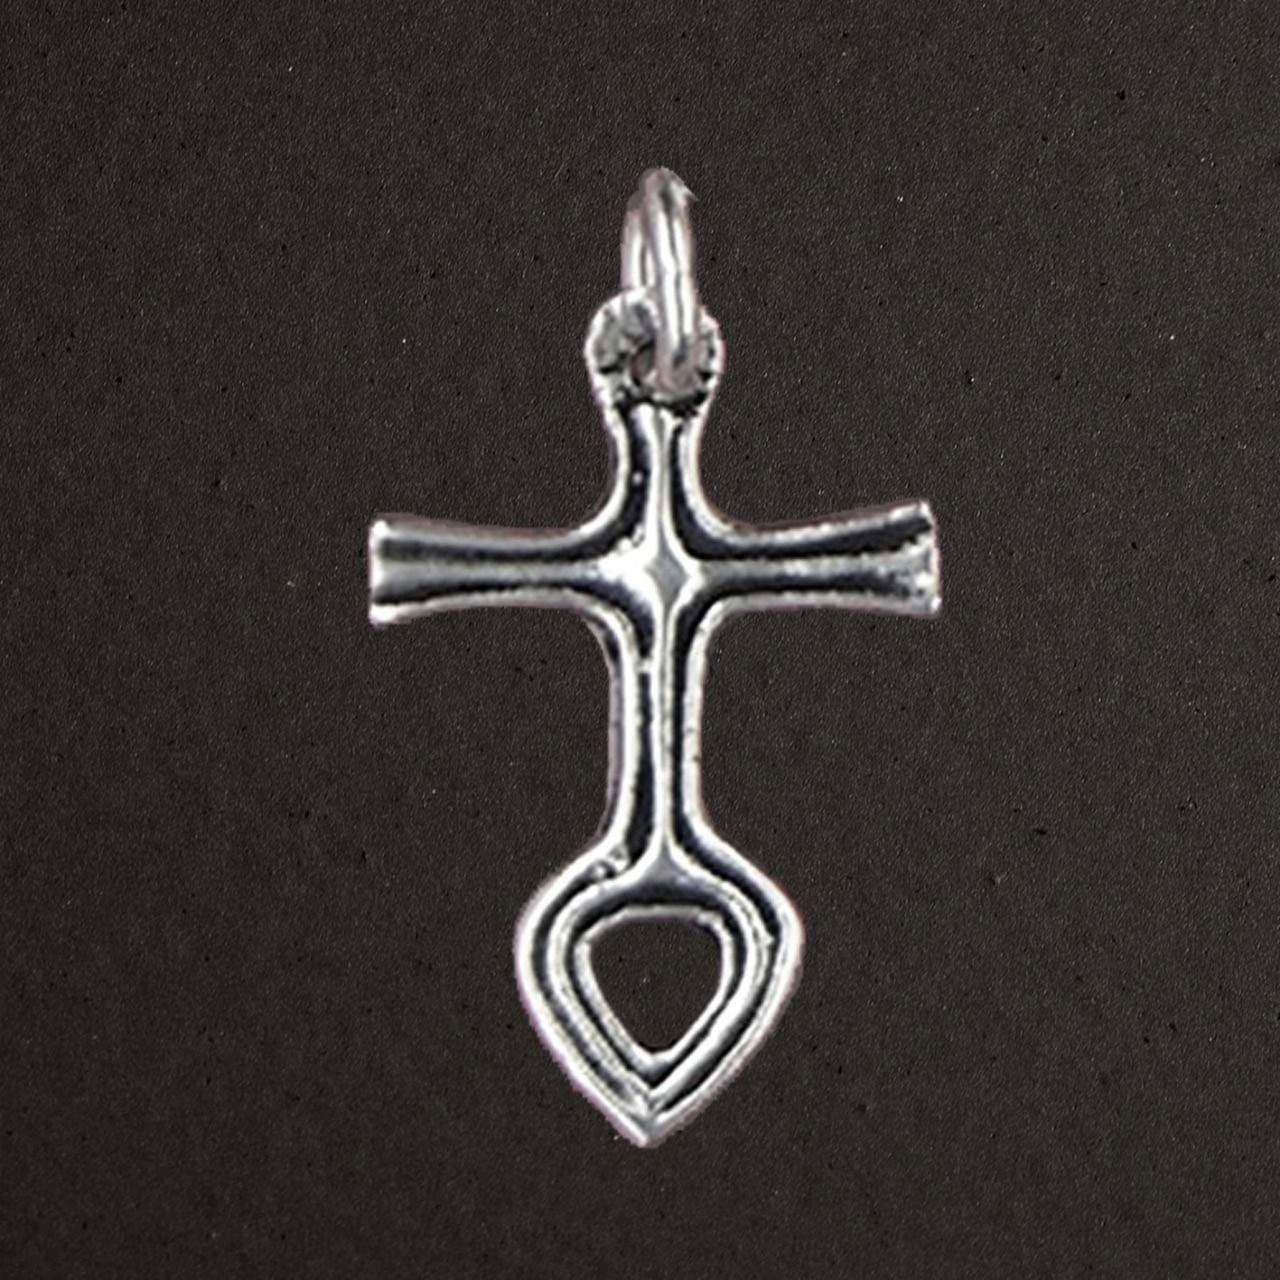 Petite croix au cœur argent massif 925/1000 (bijoux Toulhoat).